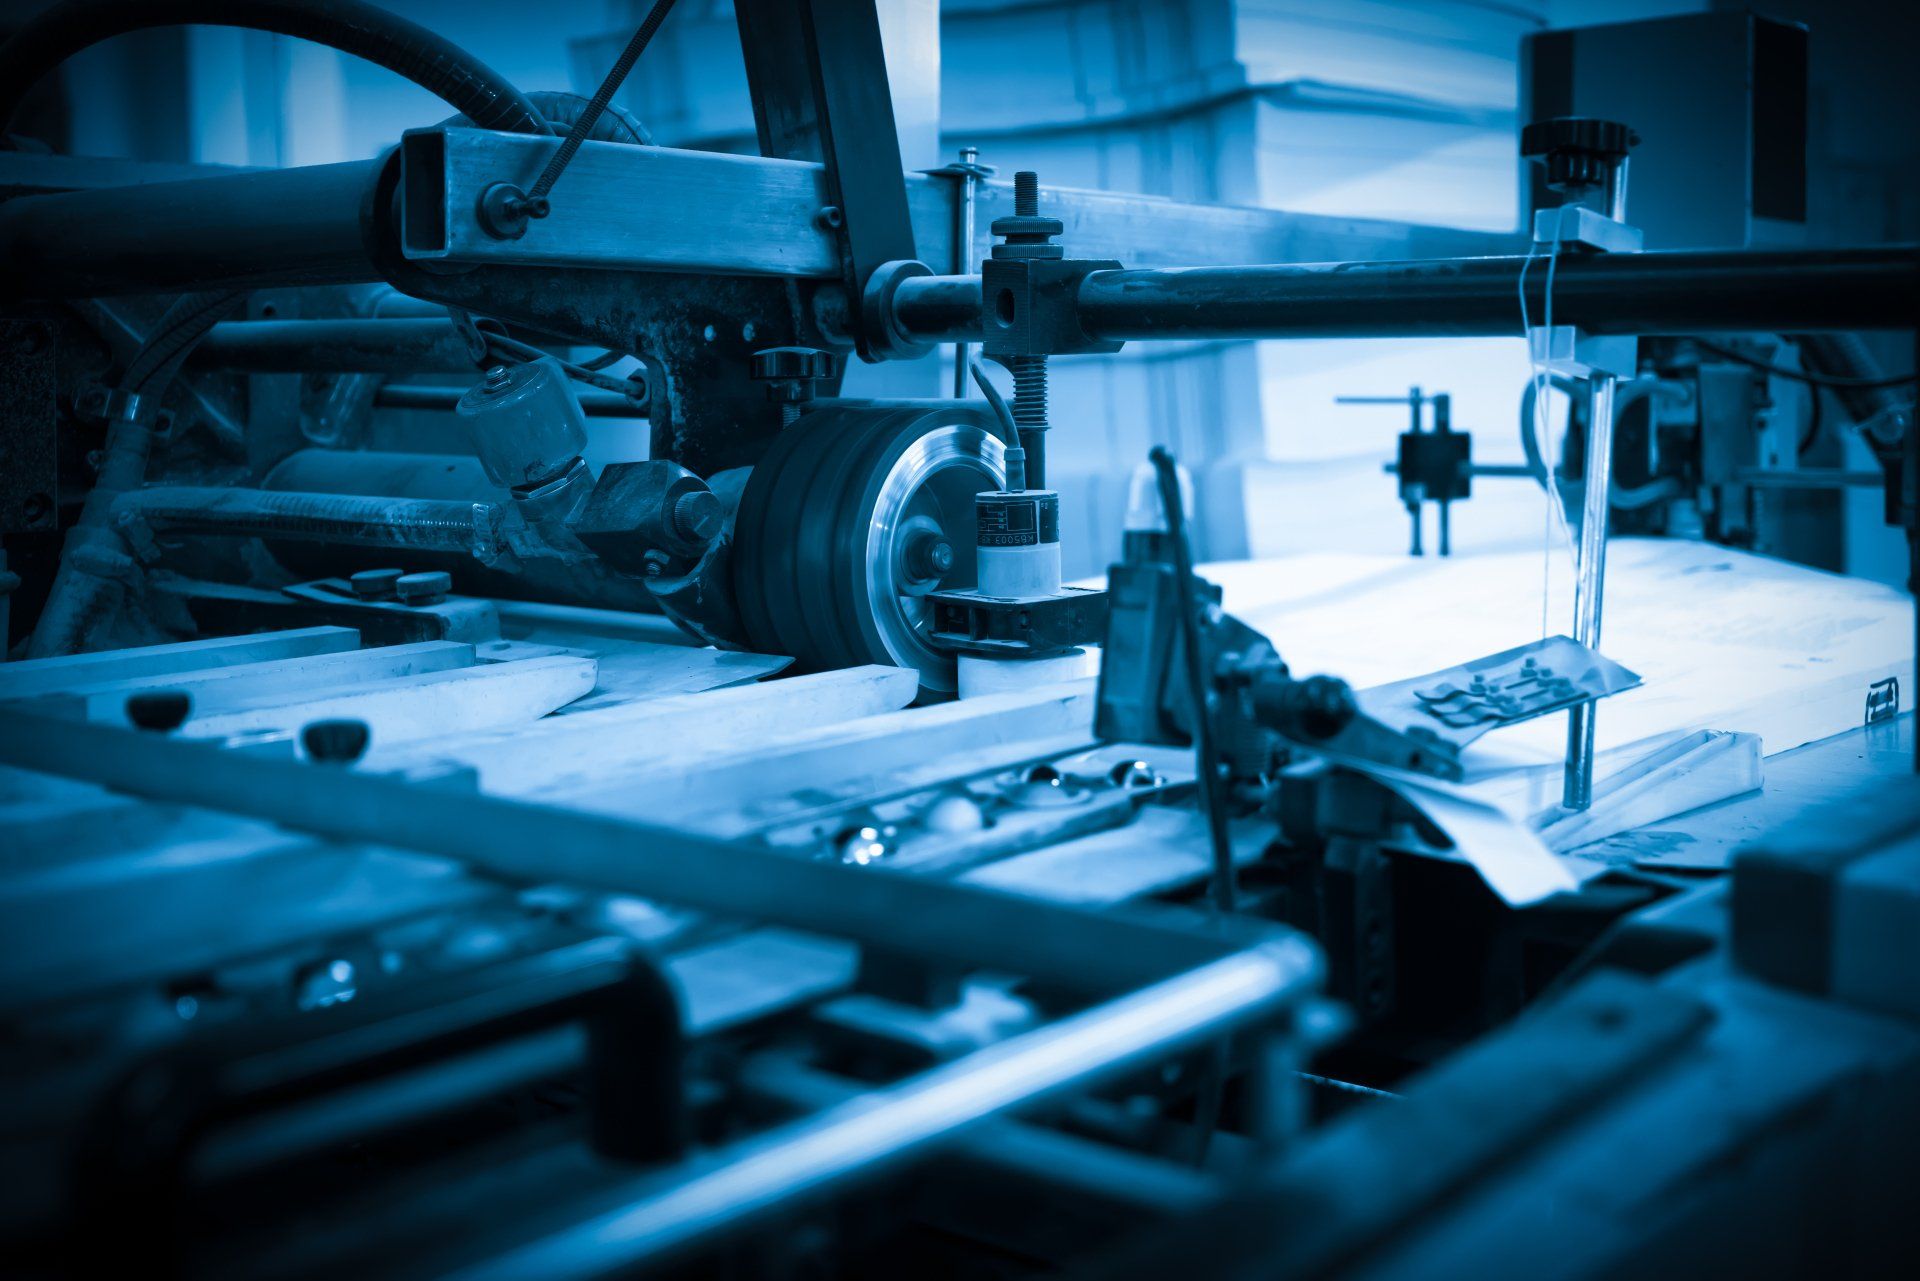 La prensa offset en el proceso de producción en la fábrica de impresión